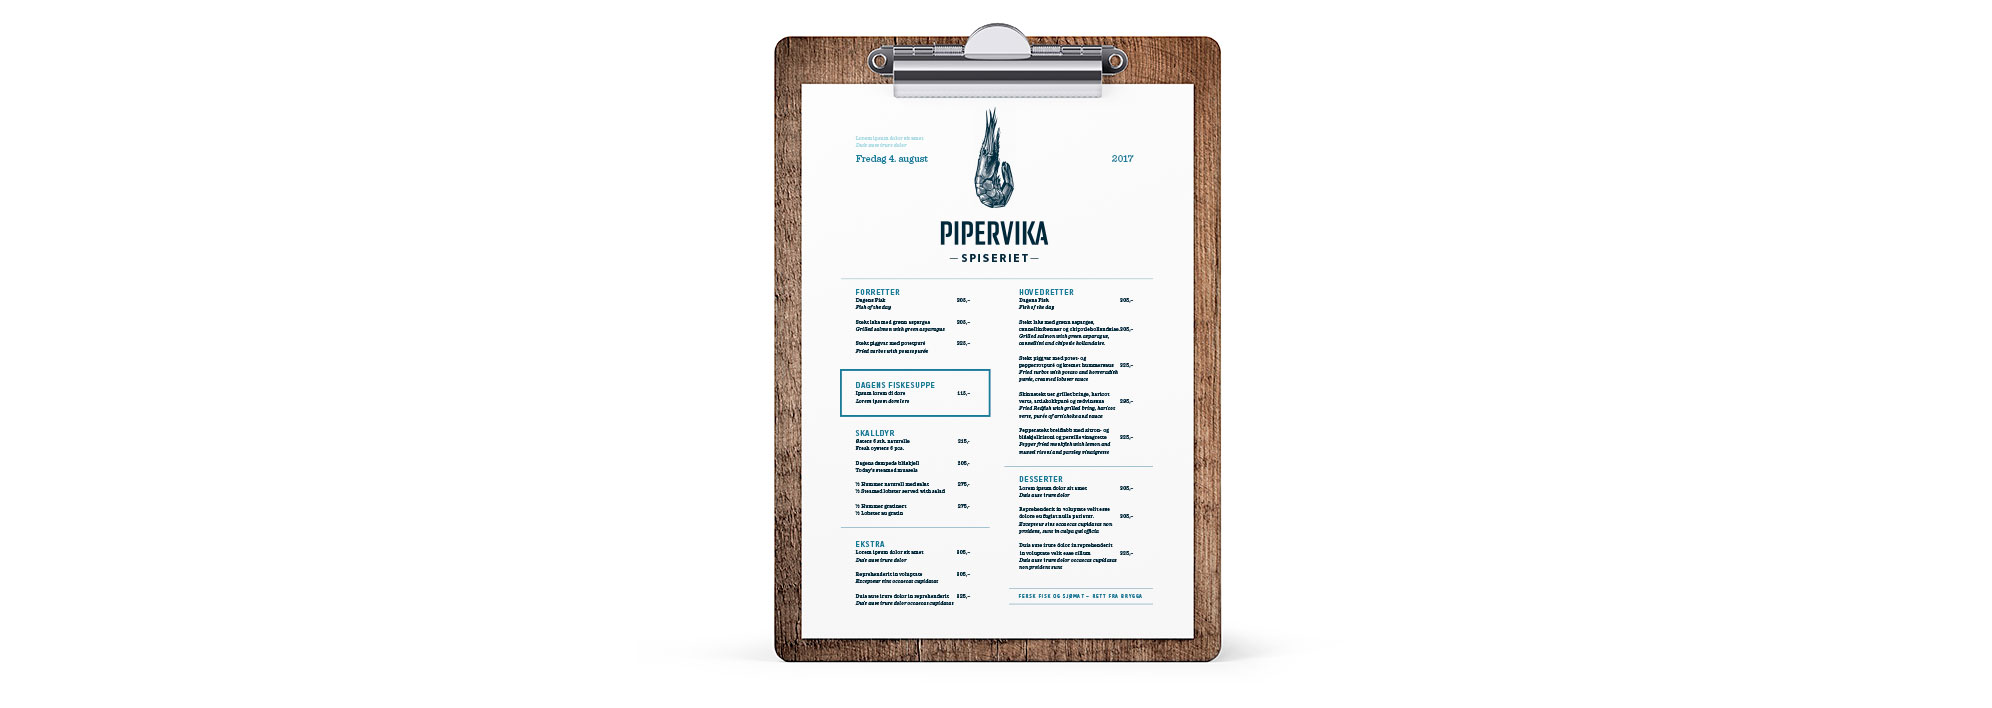 Pipervika spiseriet seafood restaurant sjømat restaurant menu meny. Visuell identitet visual identity.